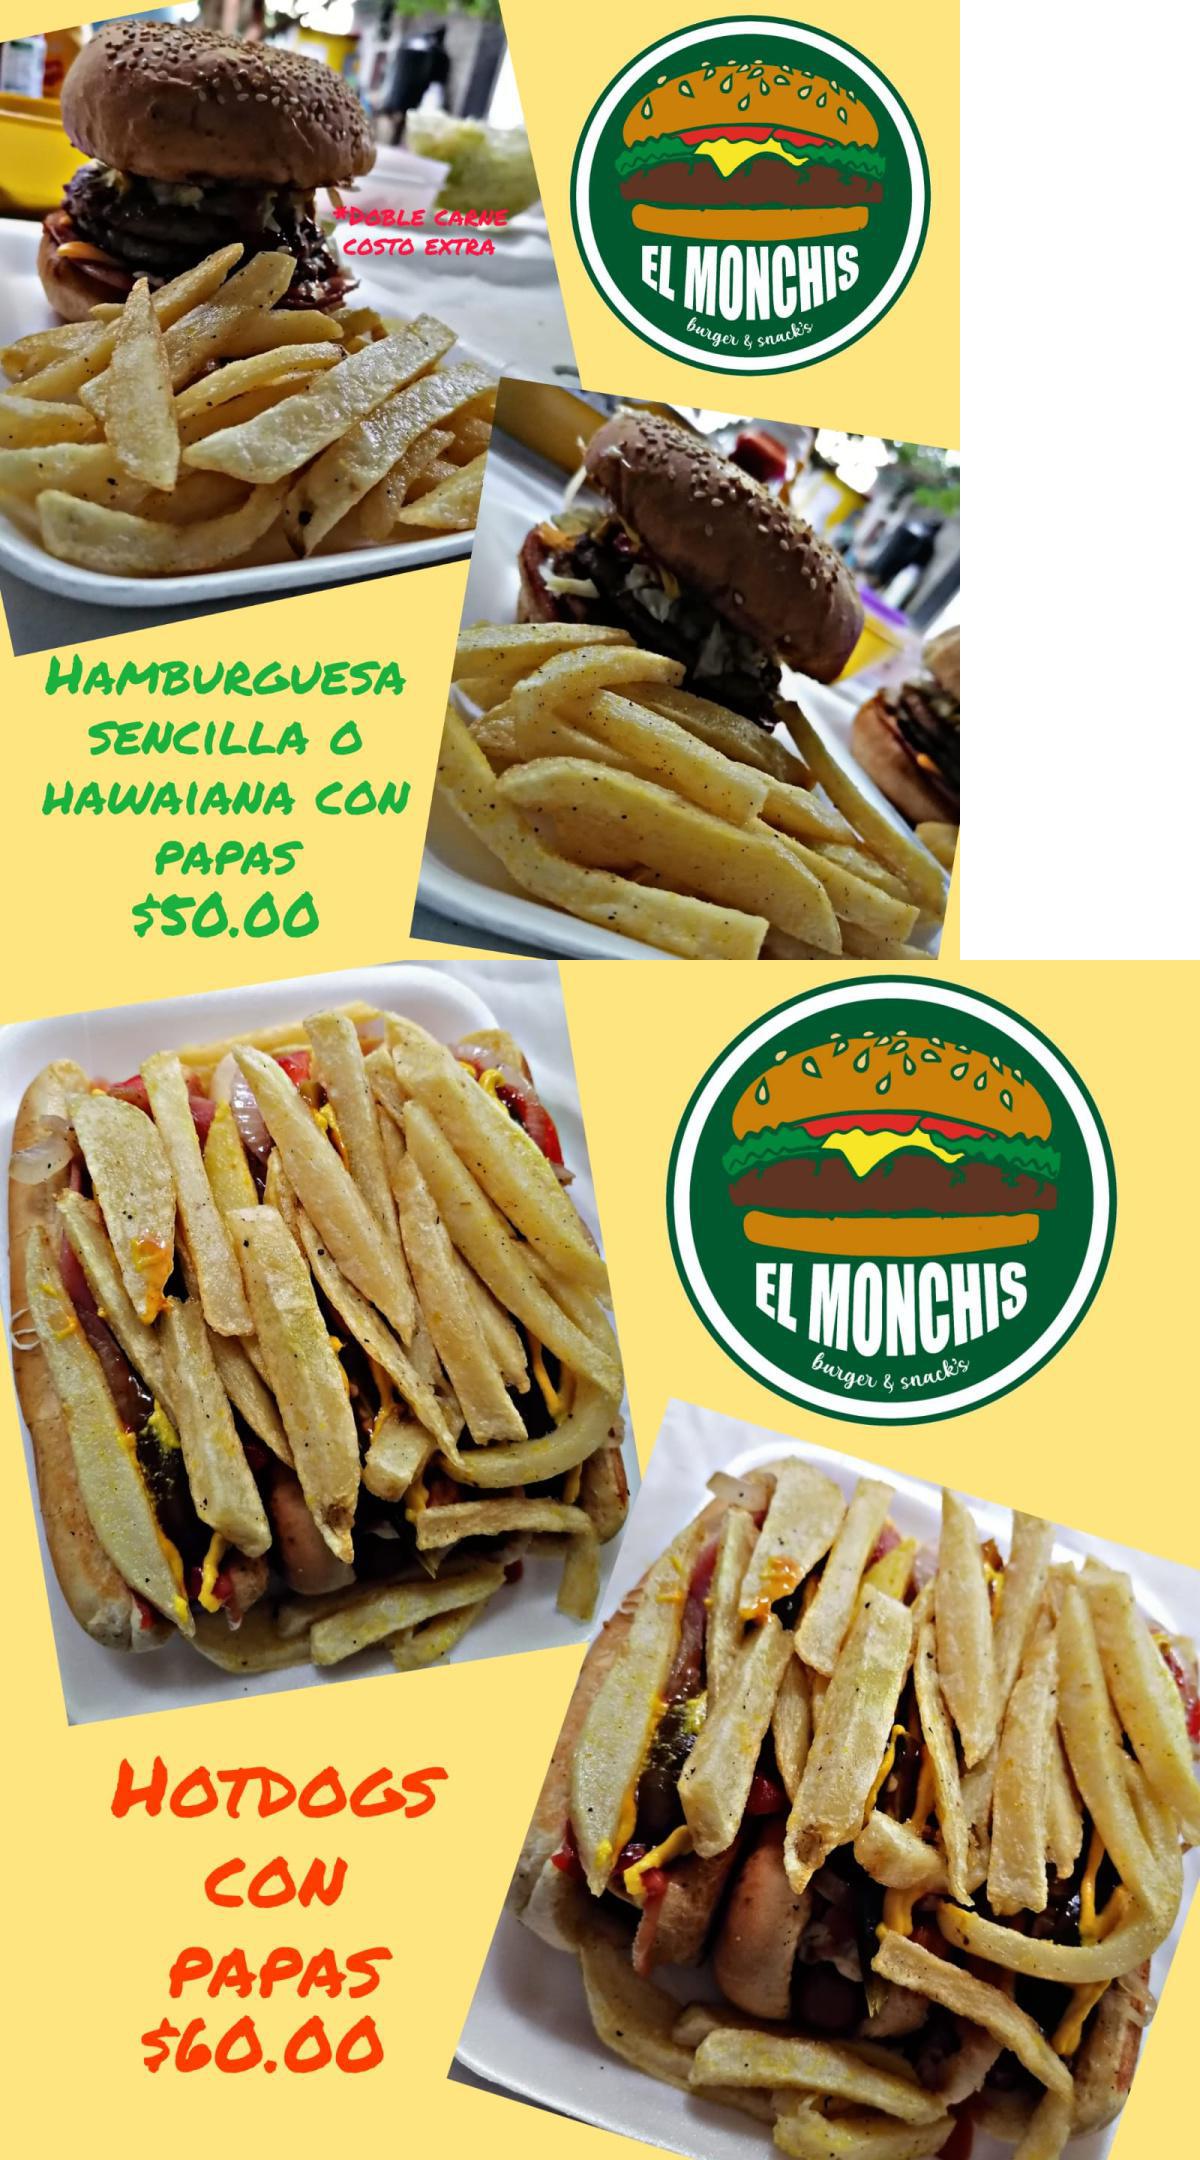 El Monchis "Burger & Snacks" - Tuxpan